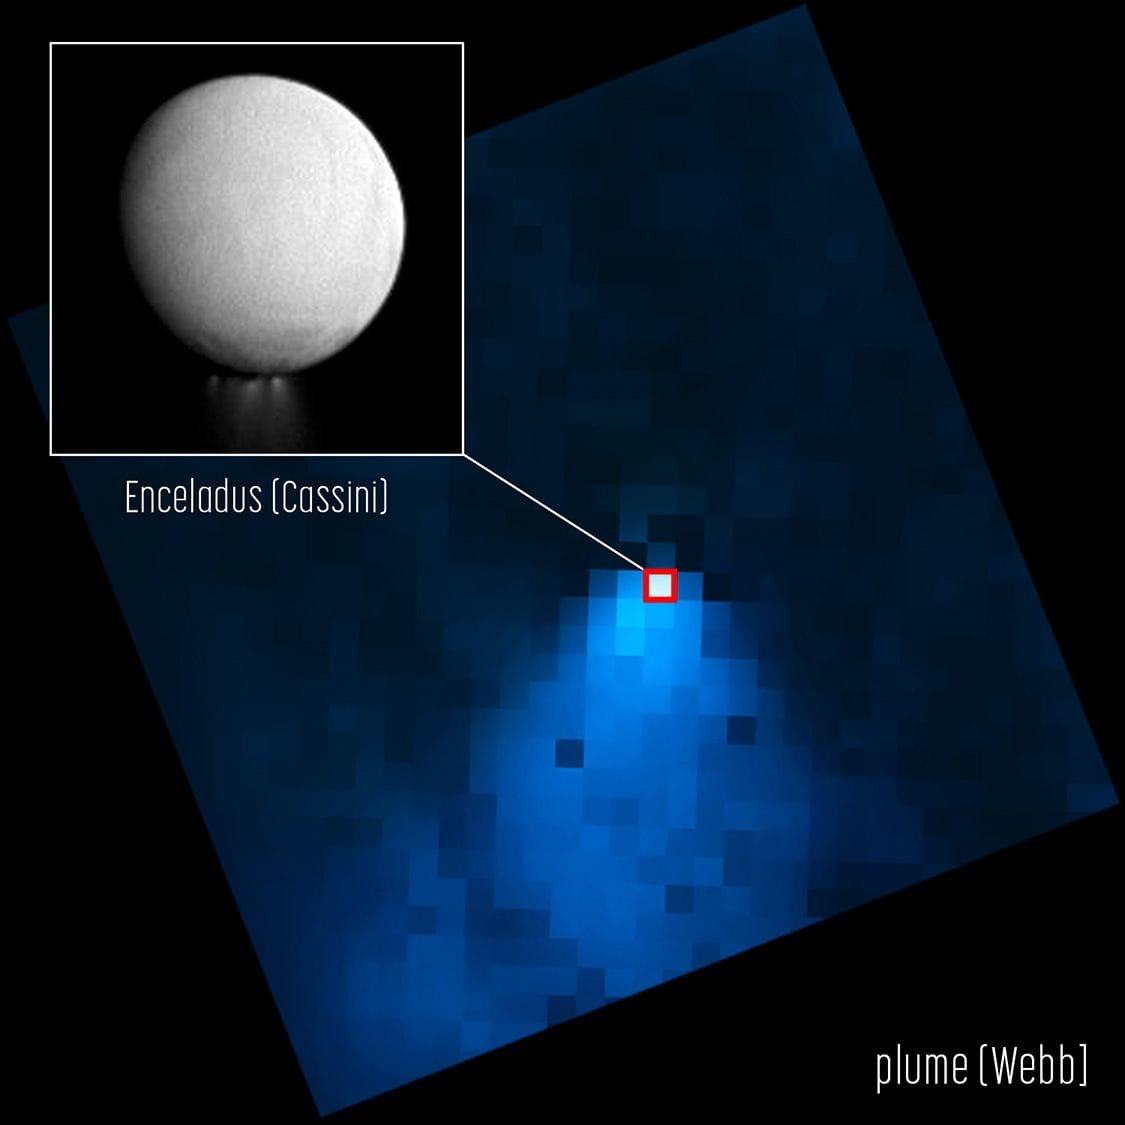 Das James-Webb-Weltraumteleskop der NASA zeigt eine Wasserdampffahne, die vom Südpol des Saturnmondes Enceladus ausgeht und sich über die 20-fache Größe des Mondes selbst erstreckt. Der Einschub, ein Bild des Cassini-Orbiters, verdeutlicht, wie klein Enceladus auf dem Webb-Bild im Vergleich zur Wasserfahne erscheint.